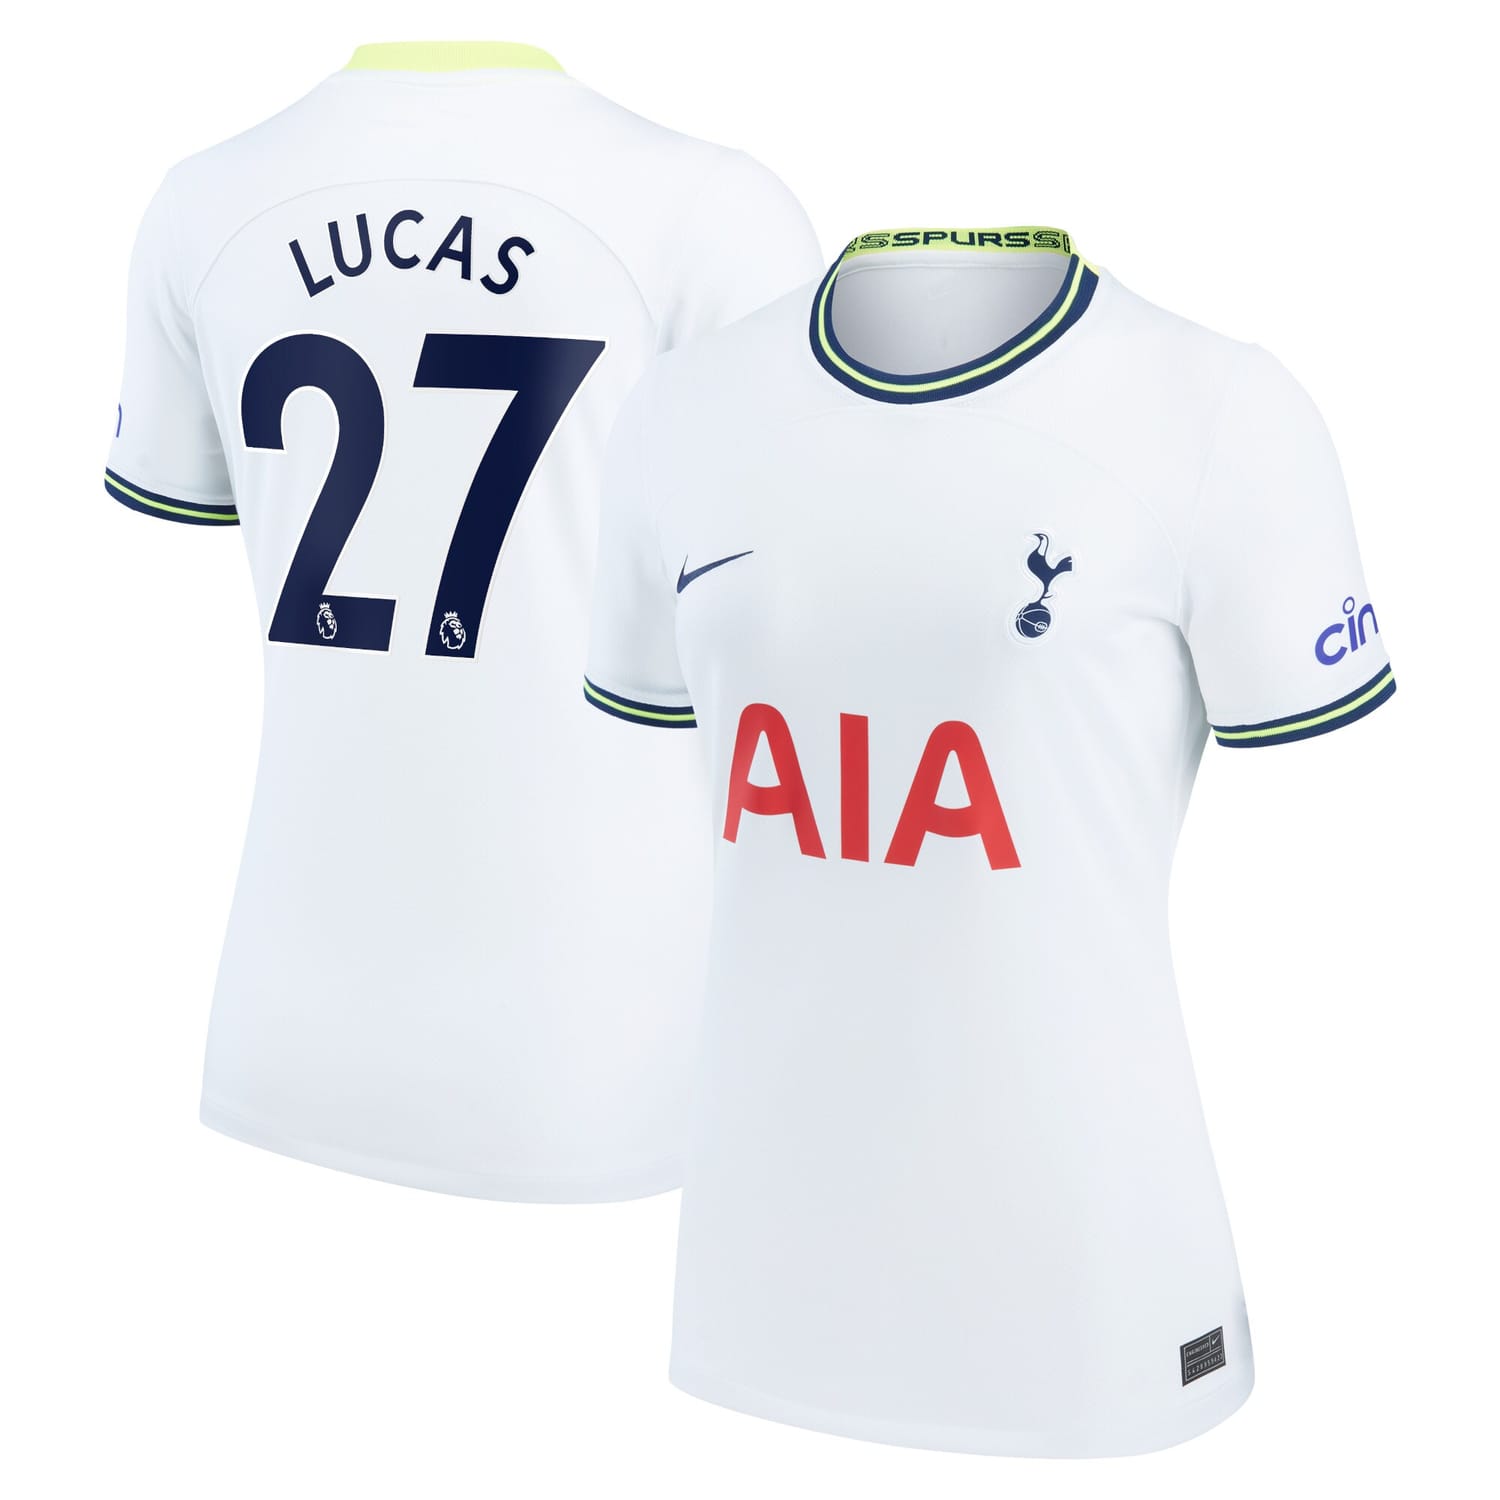 Premier League Tottenham Hotspur Home Jersey Shirt 2022-23 player Lucas Hernandez 27 printing for Women